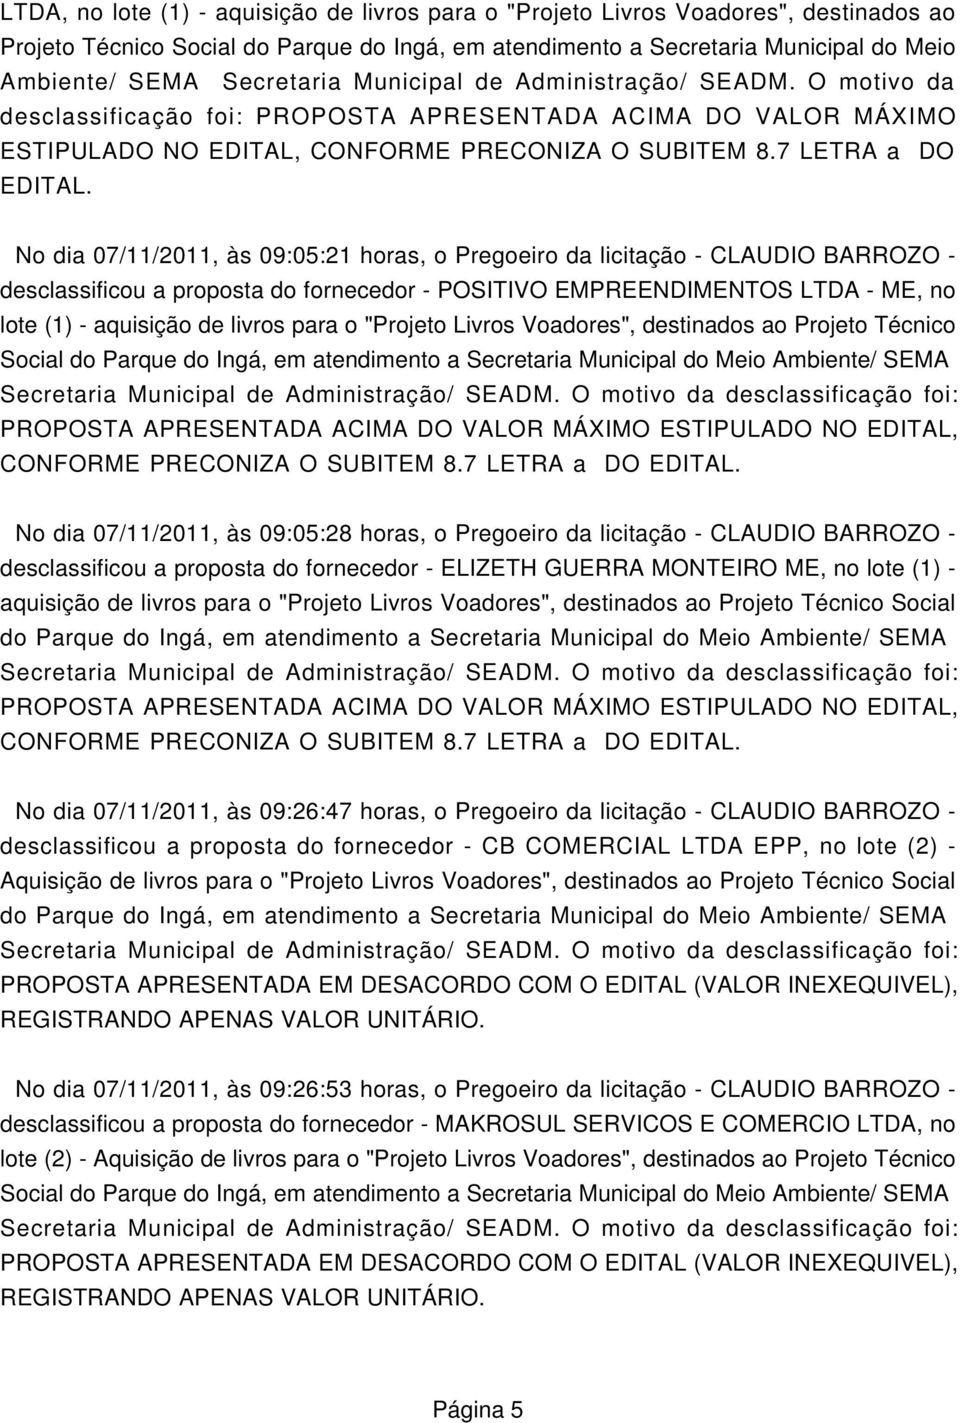 No dia 07/11/2011, às 09:05:21 horas, o Pregoeiro da licitação - CLAUDIO BARROZO - desclassificou a proposta do fornecedor - POSITIVO EMPREENDIMENTOS LTDA - ME, no lote (1) - aquisição de livros para